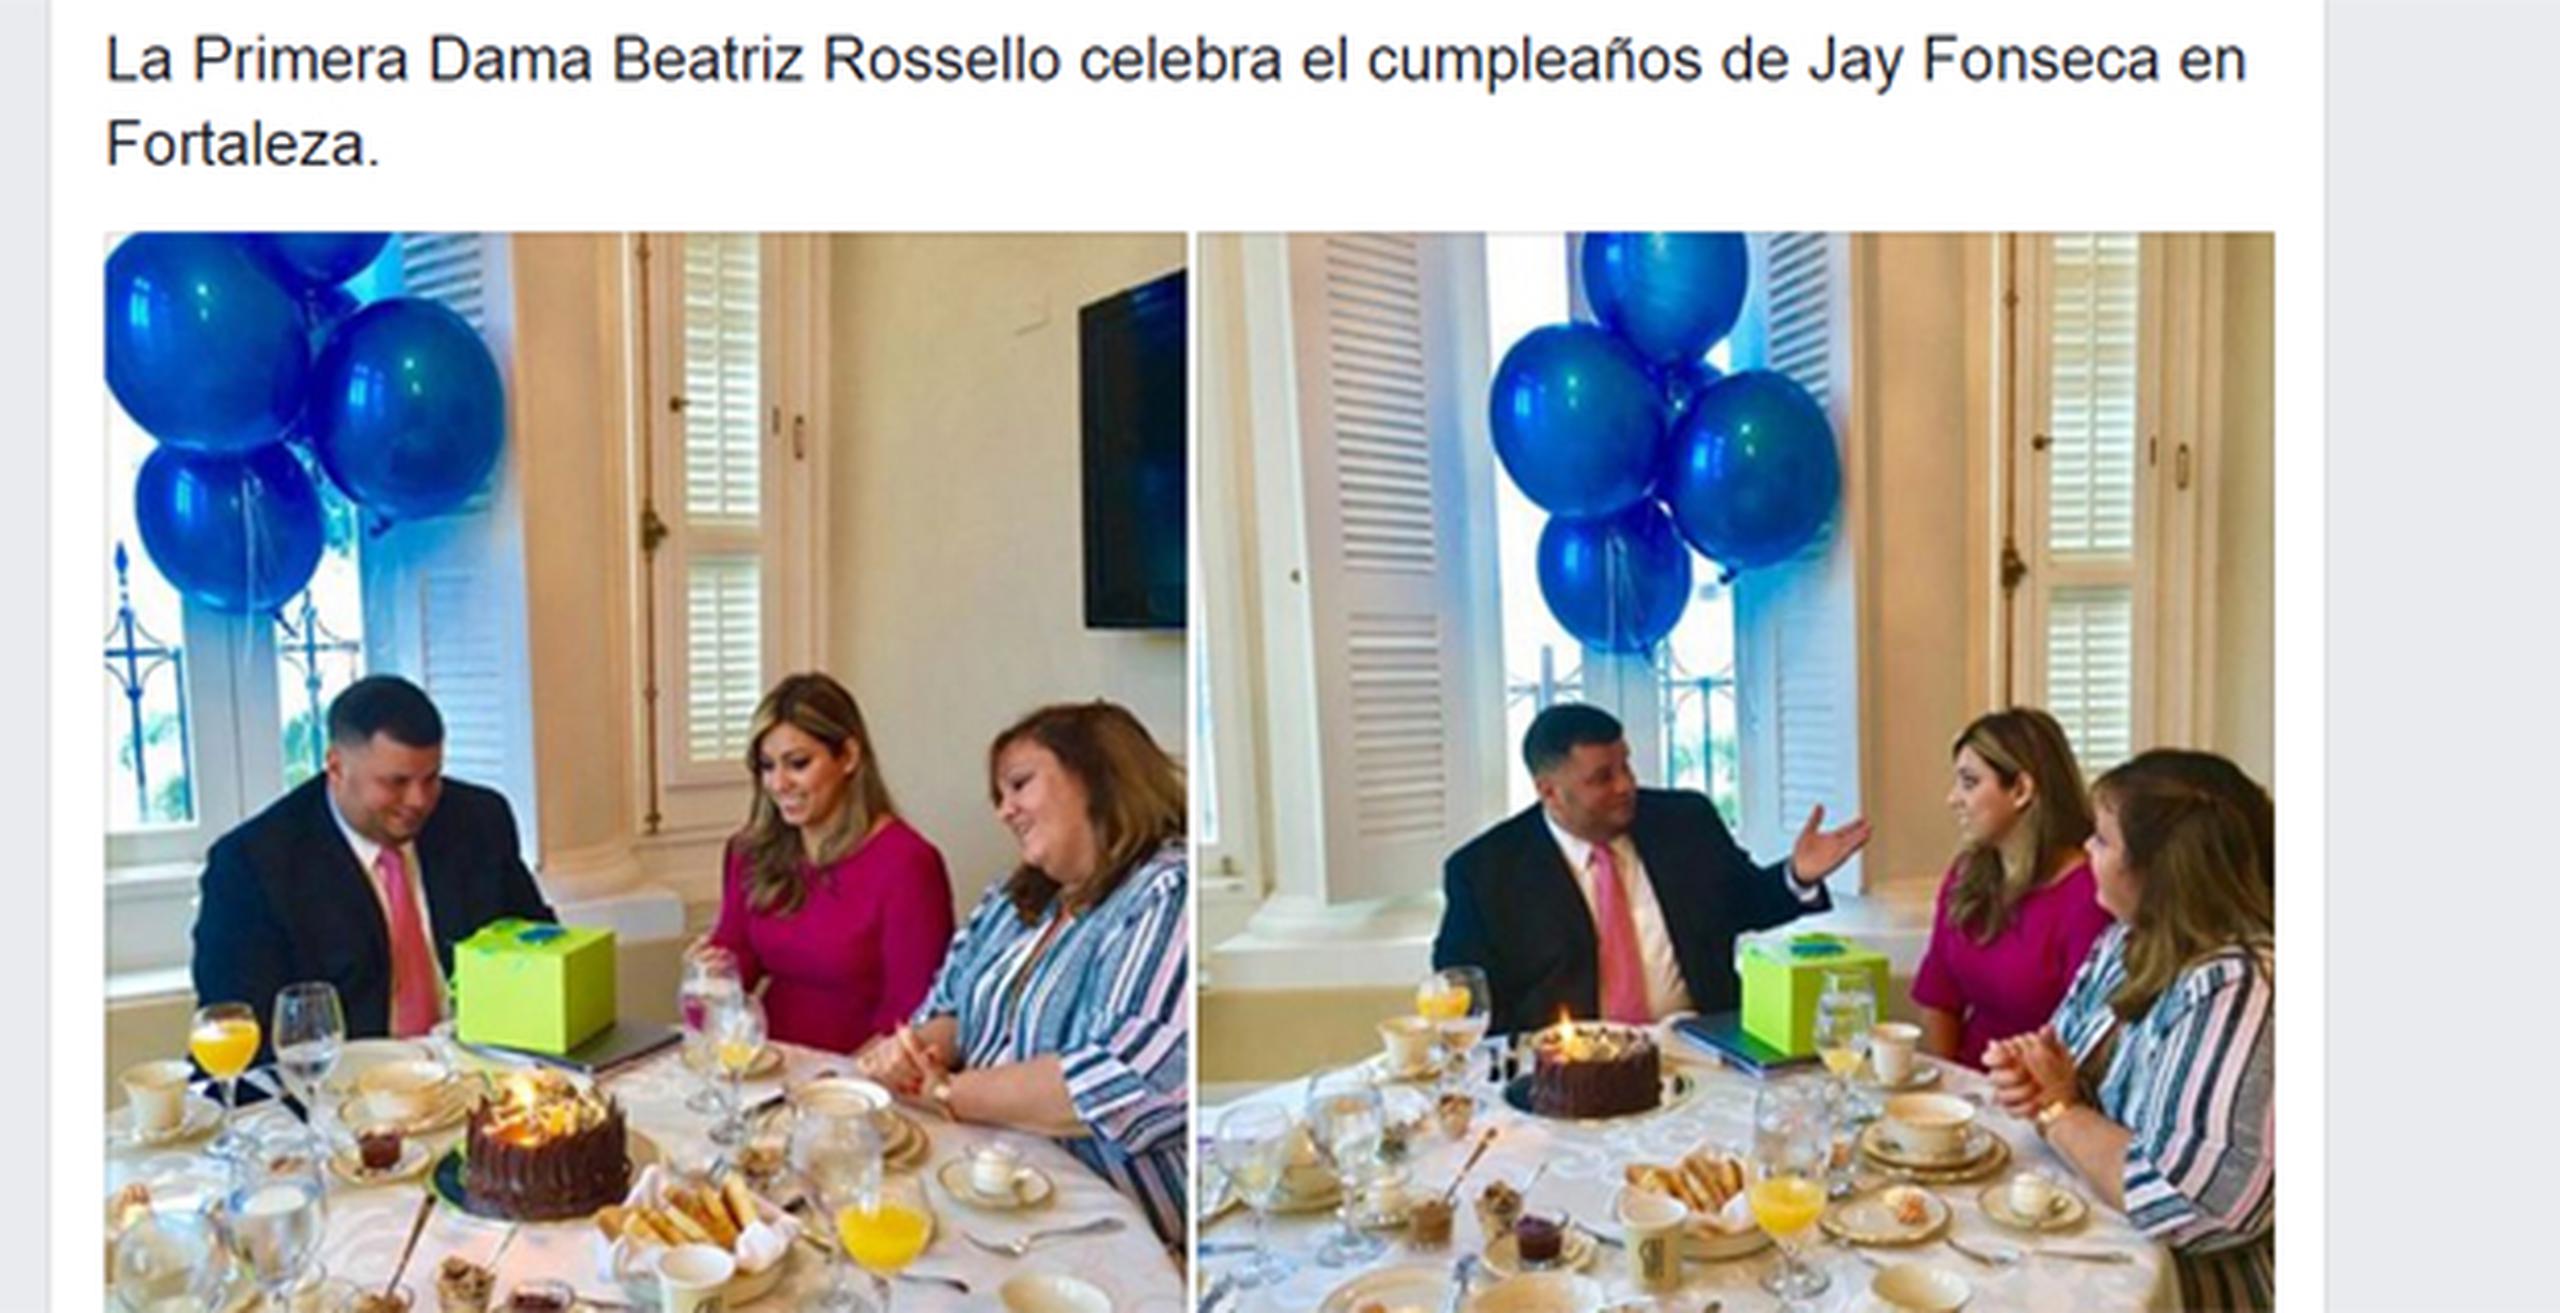 En las redes sociales quedó evidenciado el agasajo, que incluyó bizcocho, globos azules, y todo un desayuno. (Captura/Facebook)